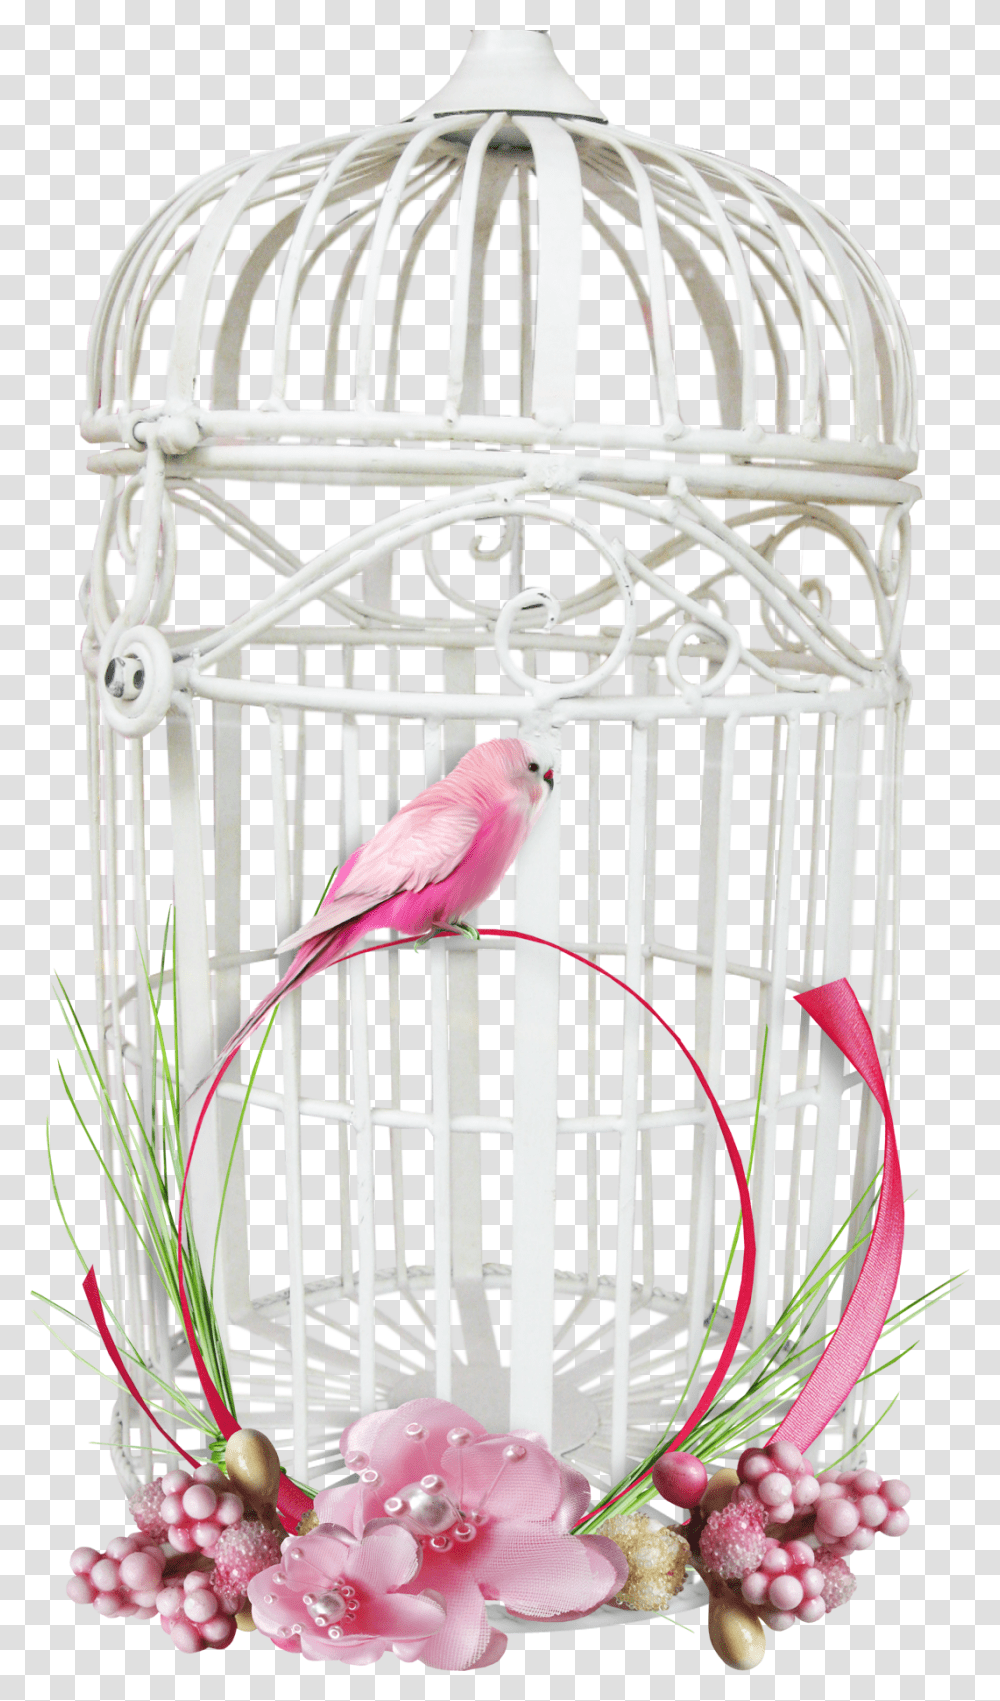 White Bird Cage Image Purepng Free Cc0 Background Bird Cage, Animal, Furniture, Parakeet, Parrot Transparent Png